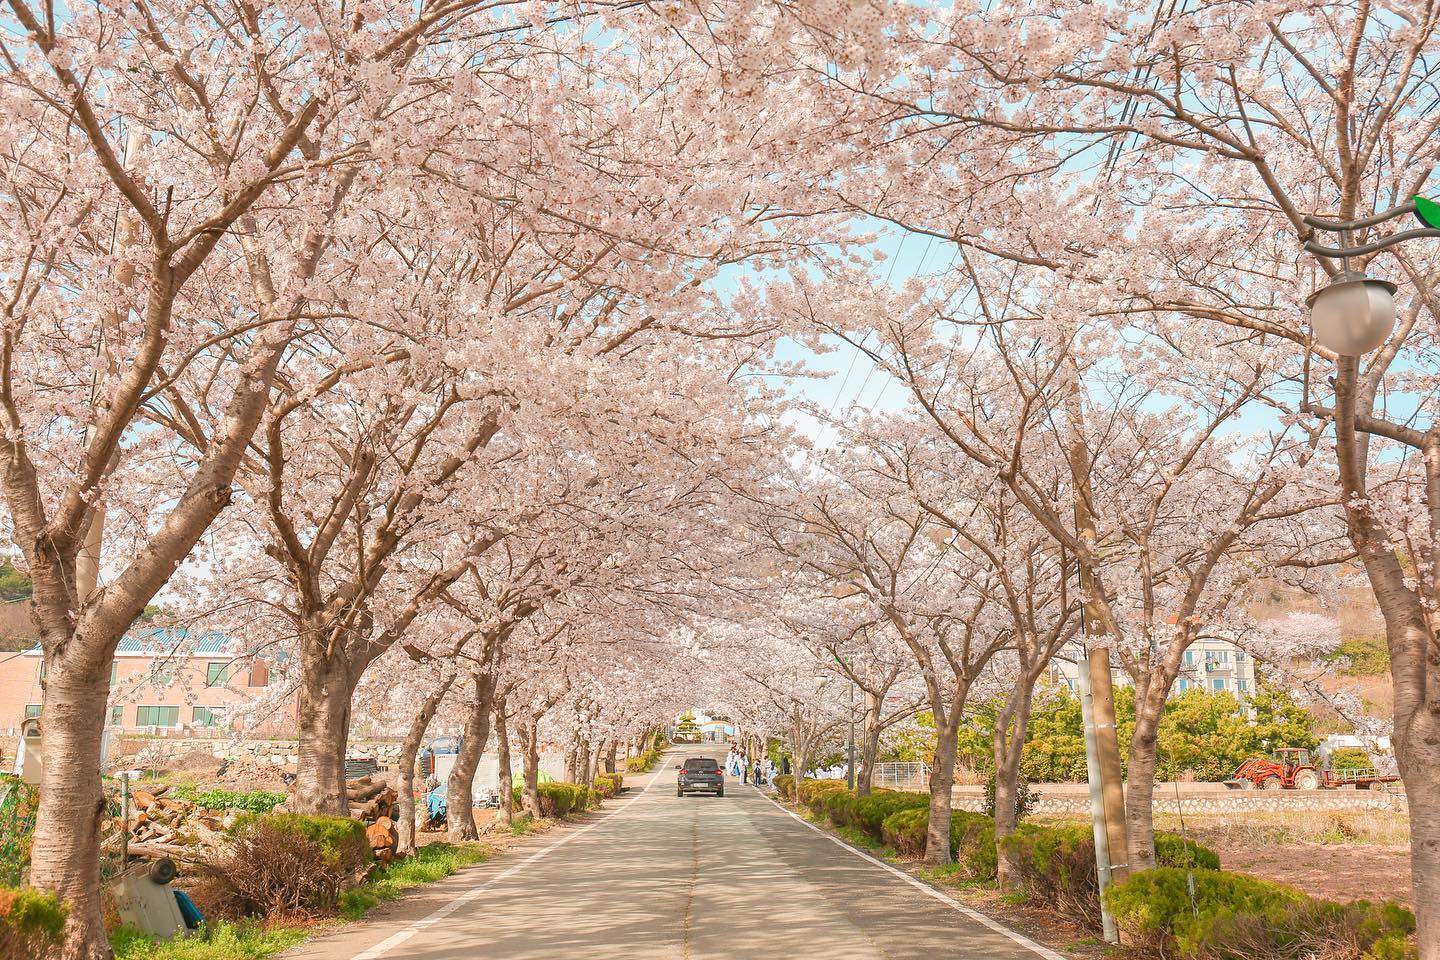 학교 앞 벚꽃터널이 유명해지면서 거제 벚꽃 명소가 된 거제여자상업고등학교. 